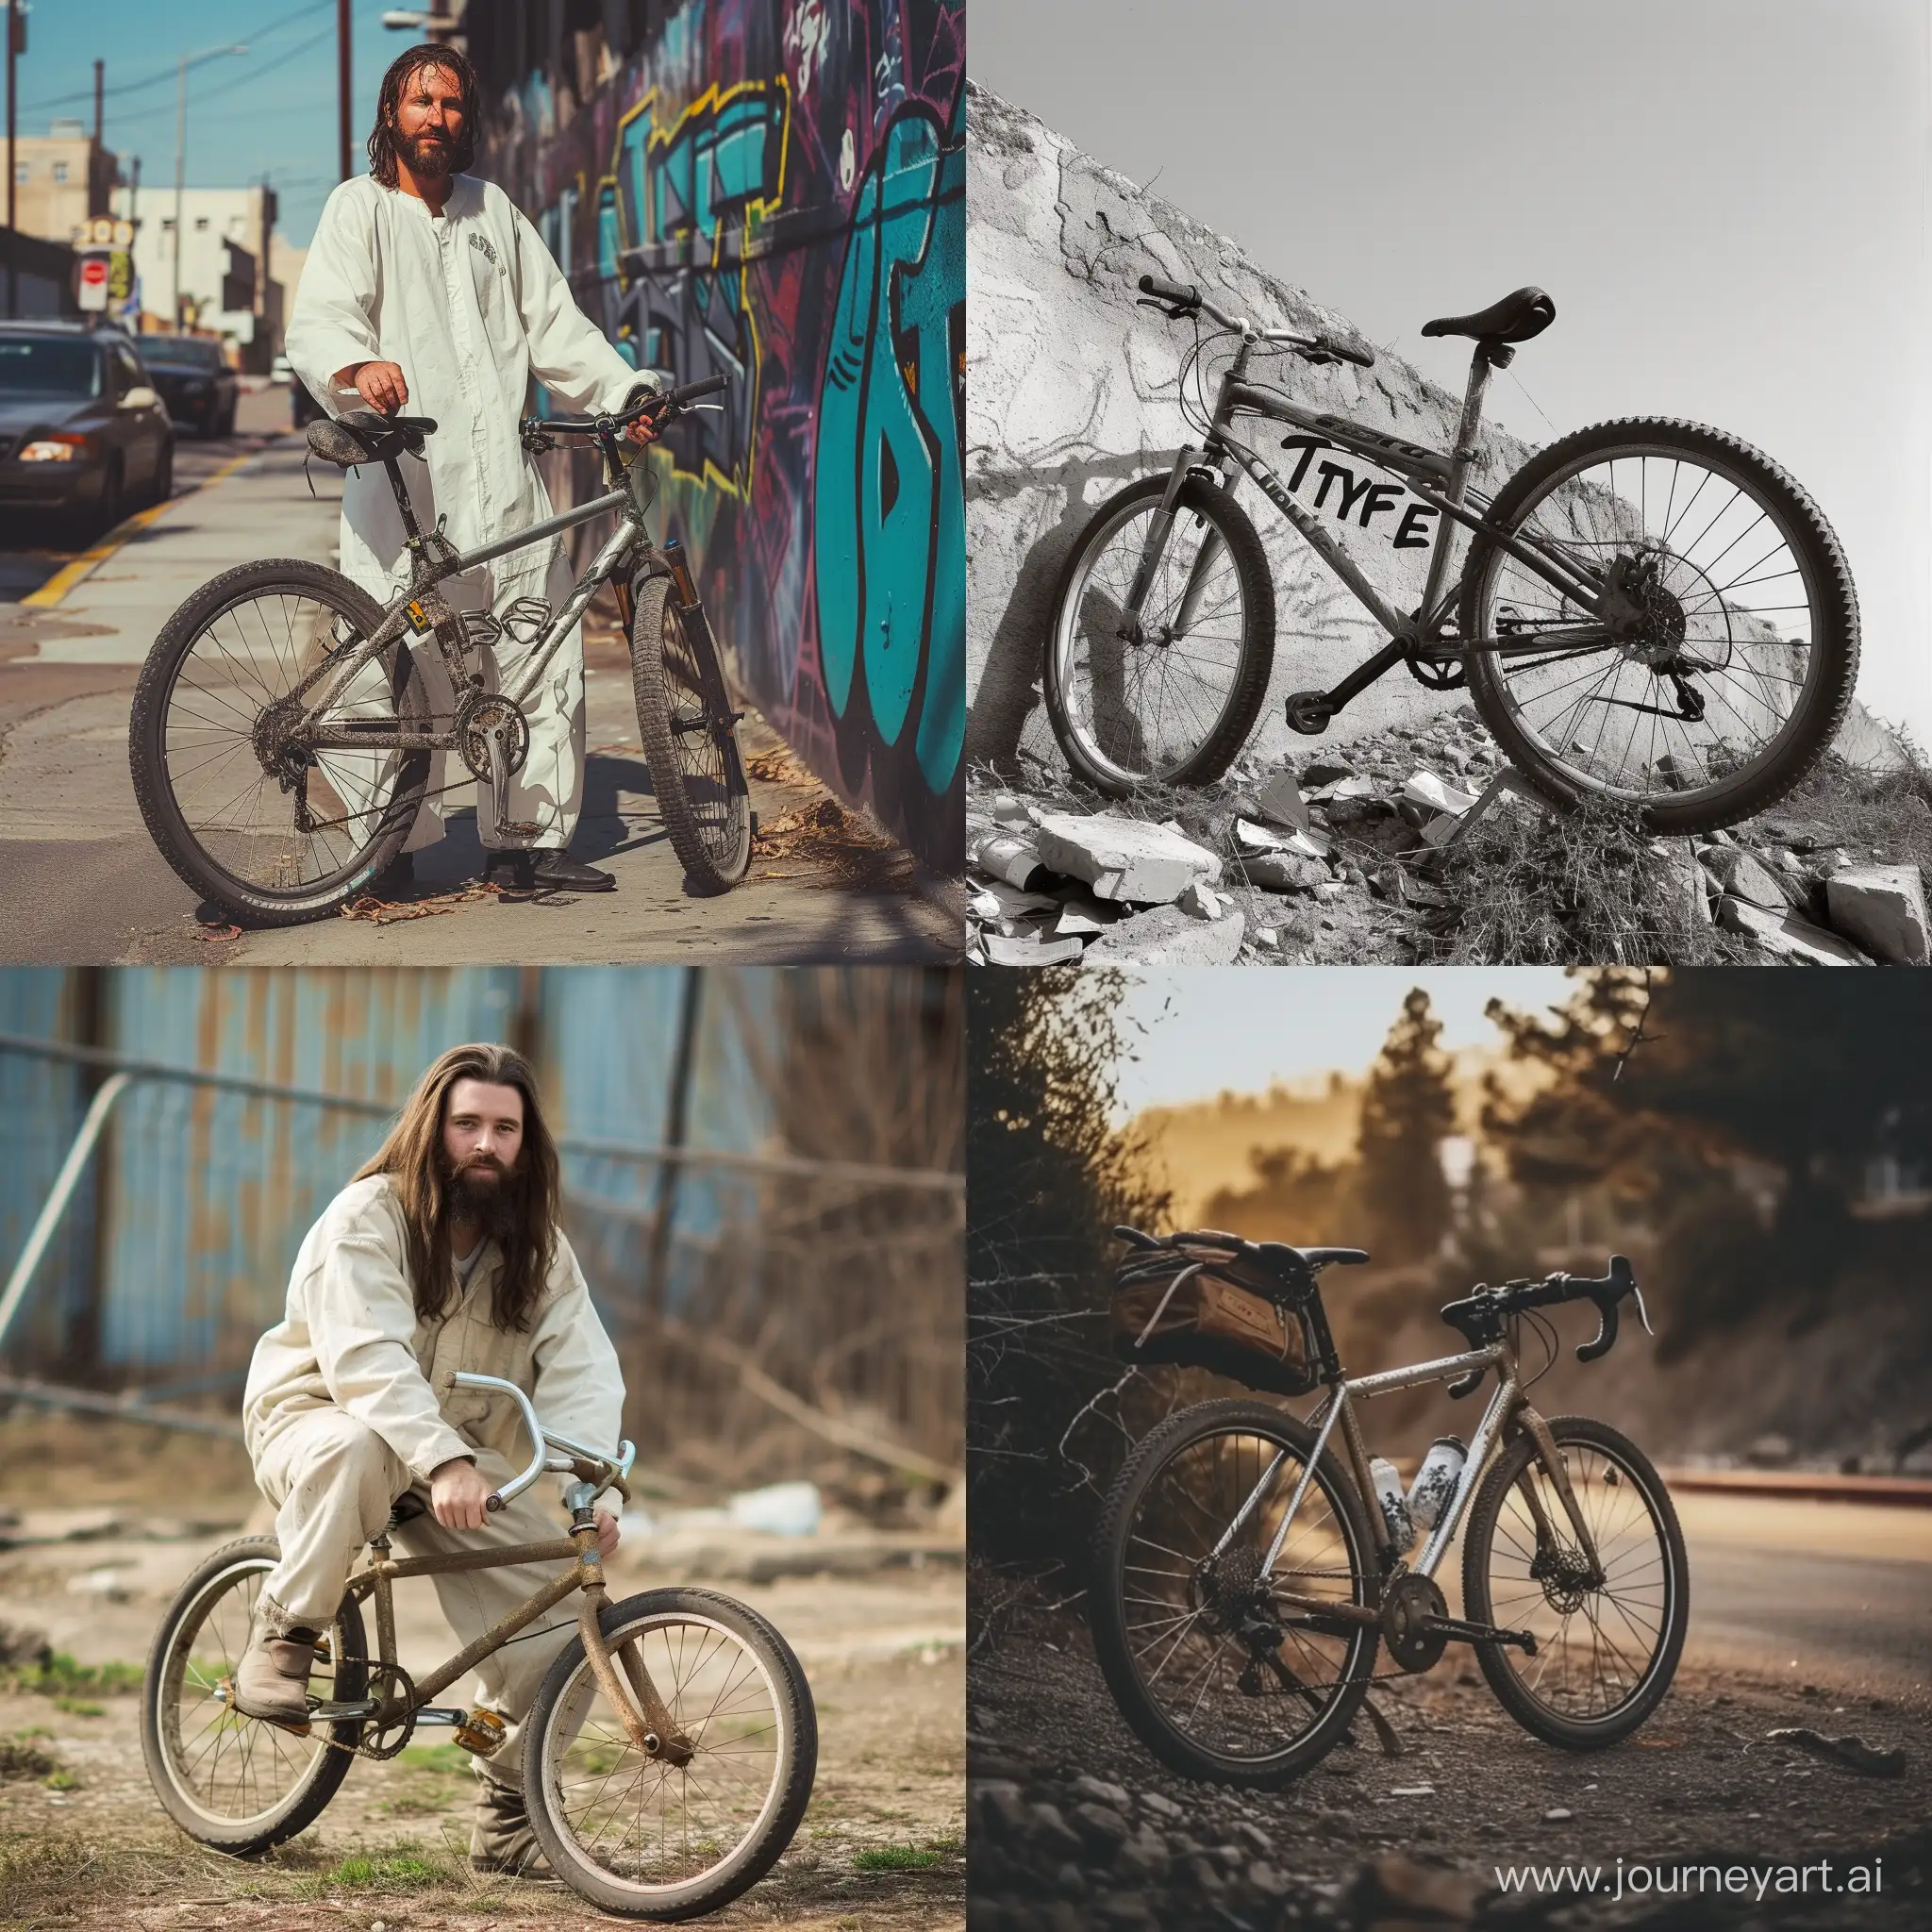 Jesus-Stealing-Bicycle-at-Sunset